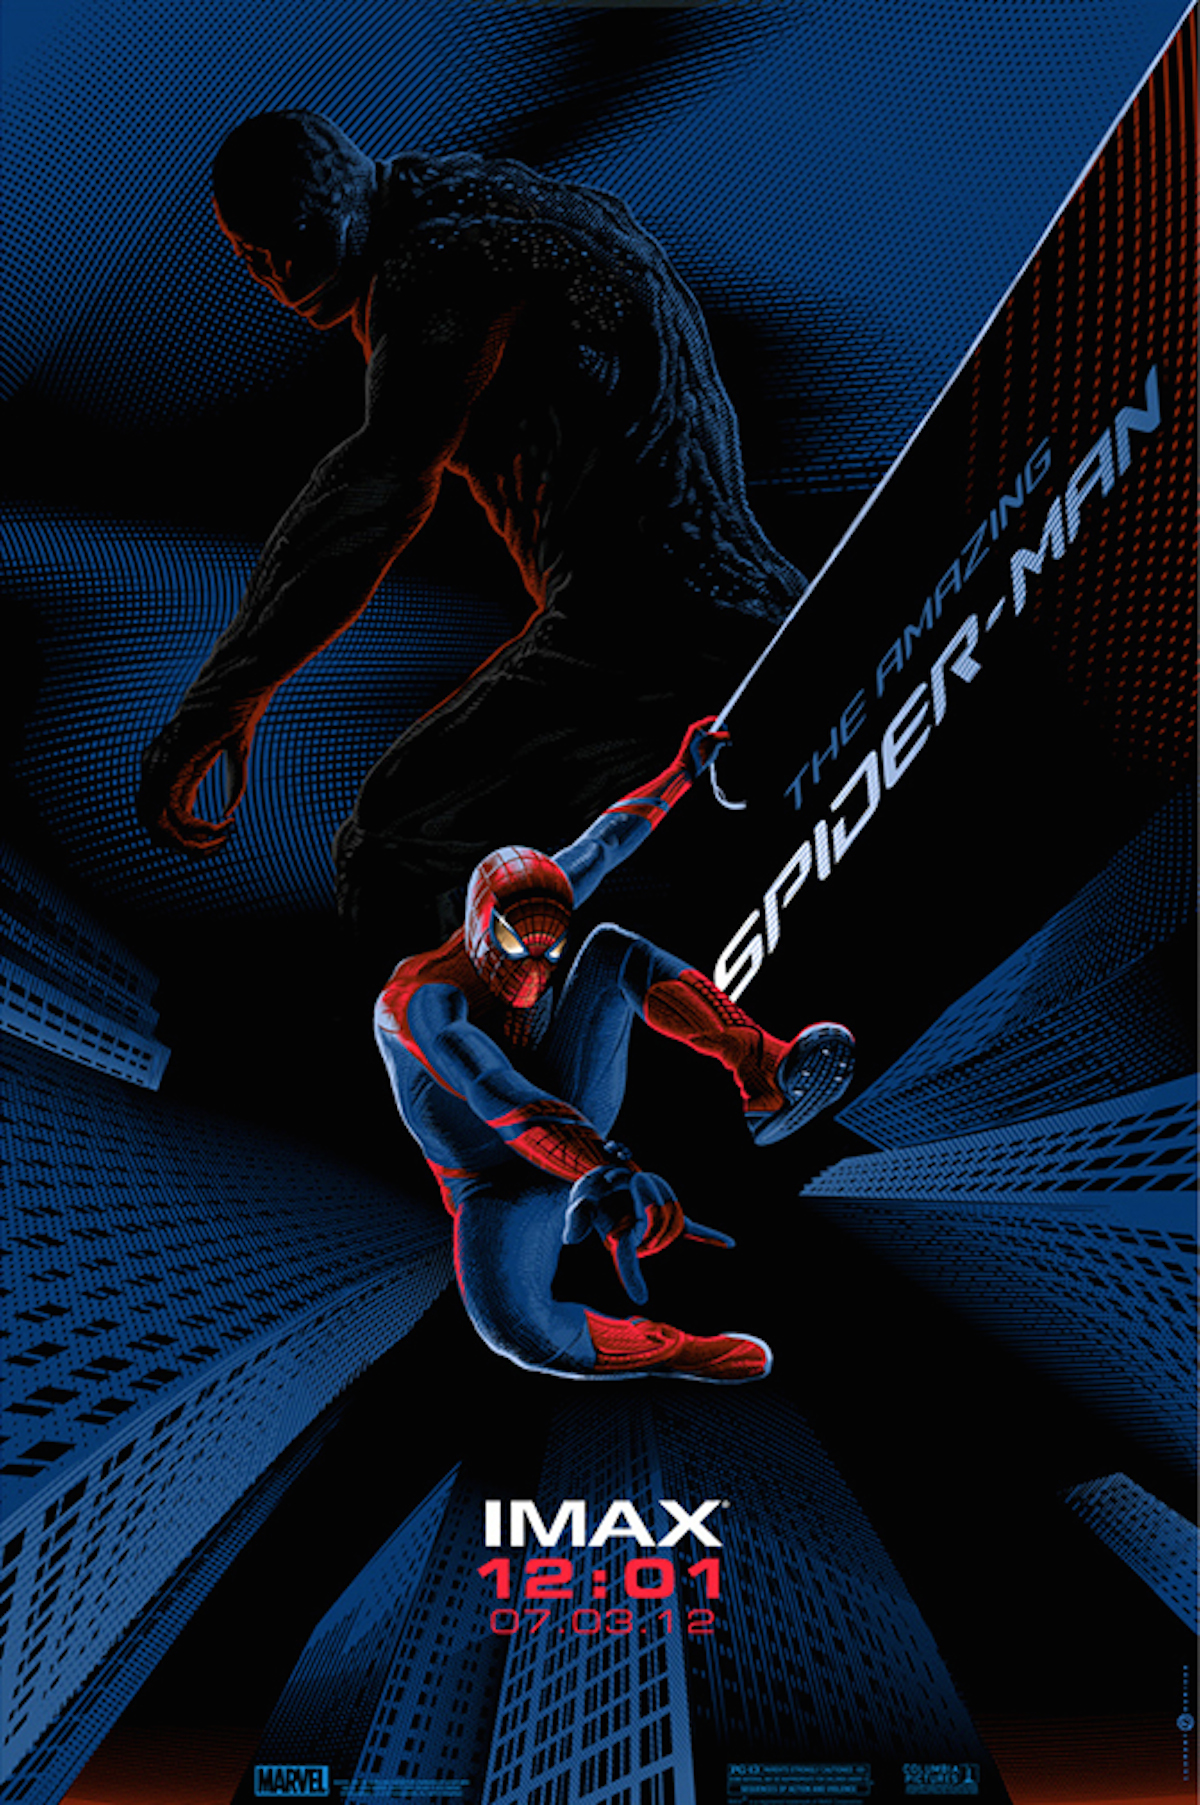 Spiderman Retro-Futuristic World of Laurent Durieux